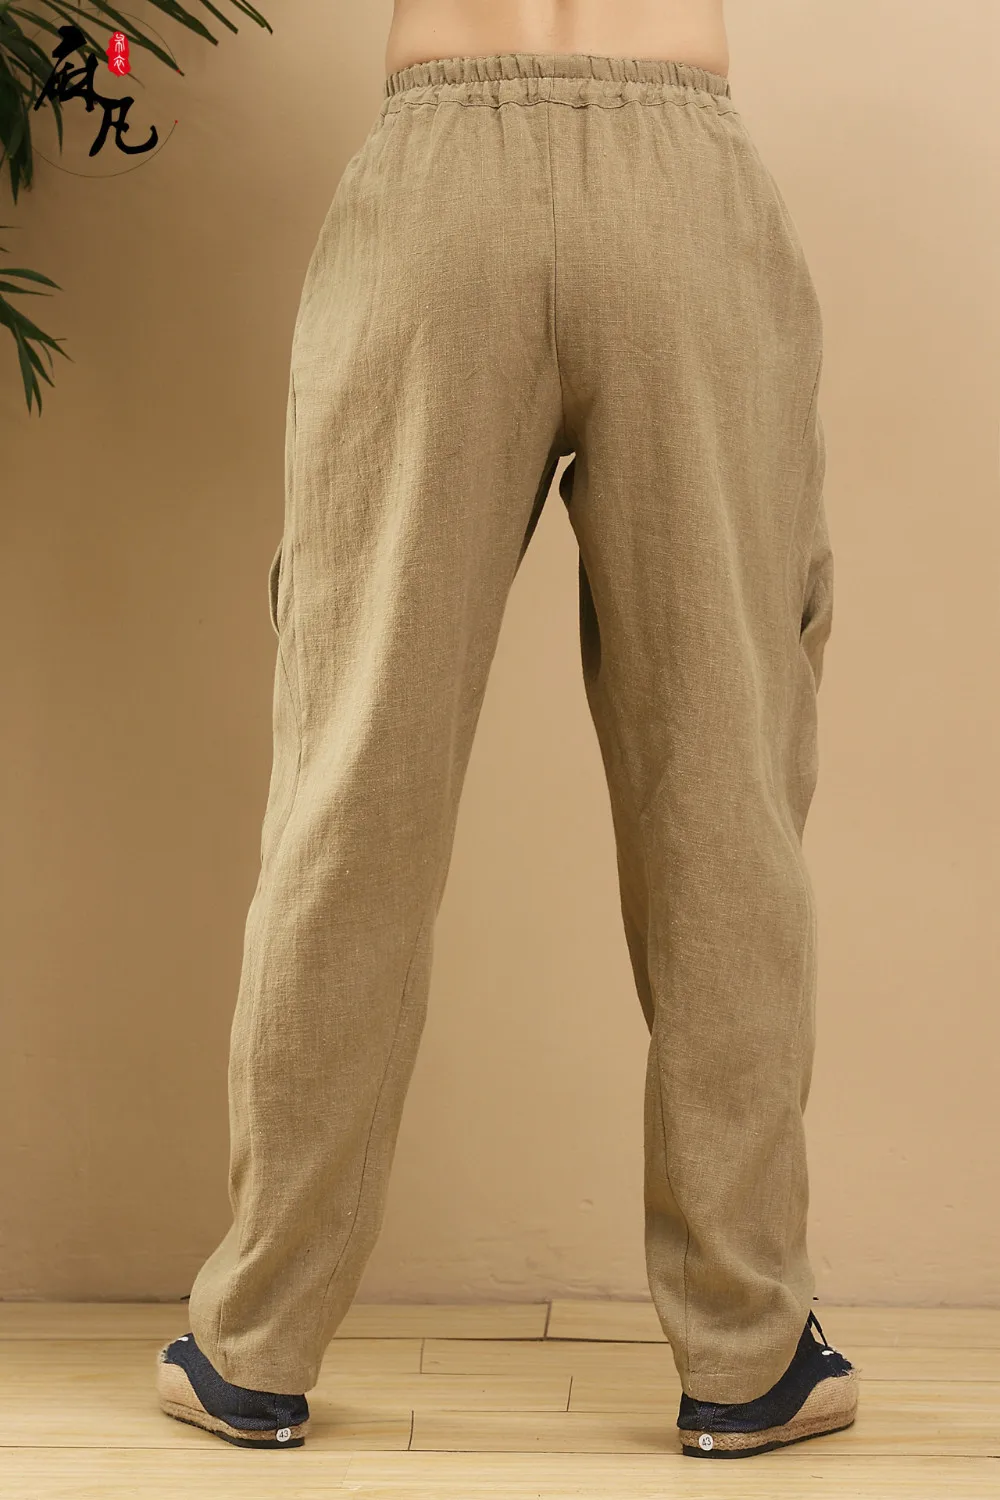 Дизайн, чистый лен, мужские повседневные брюки, эластичный пояс, натуральный лен, брюки-карандаш, брюки-морковки, мешковатые джинсы